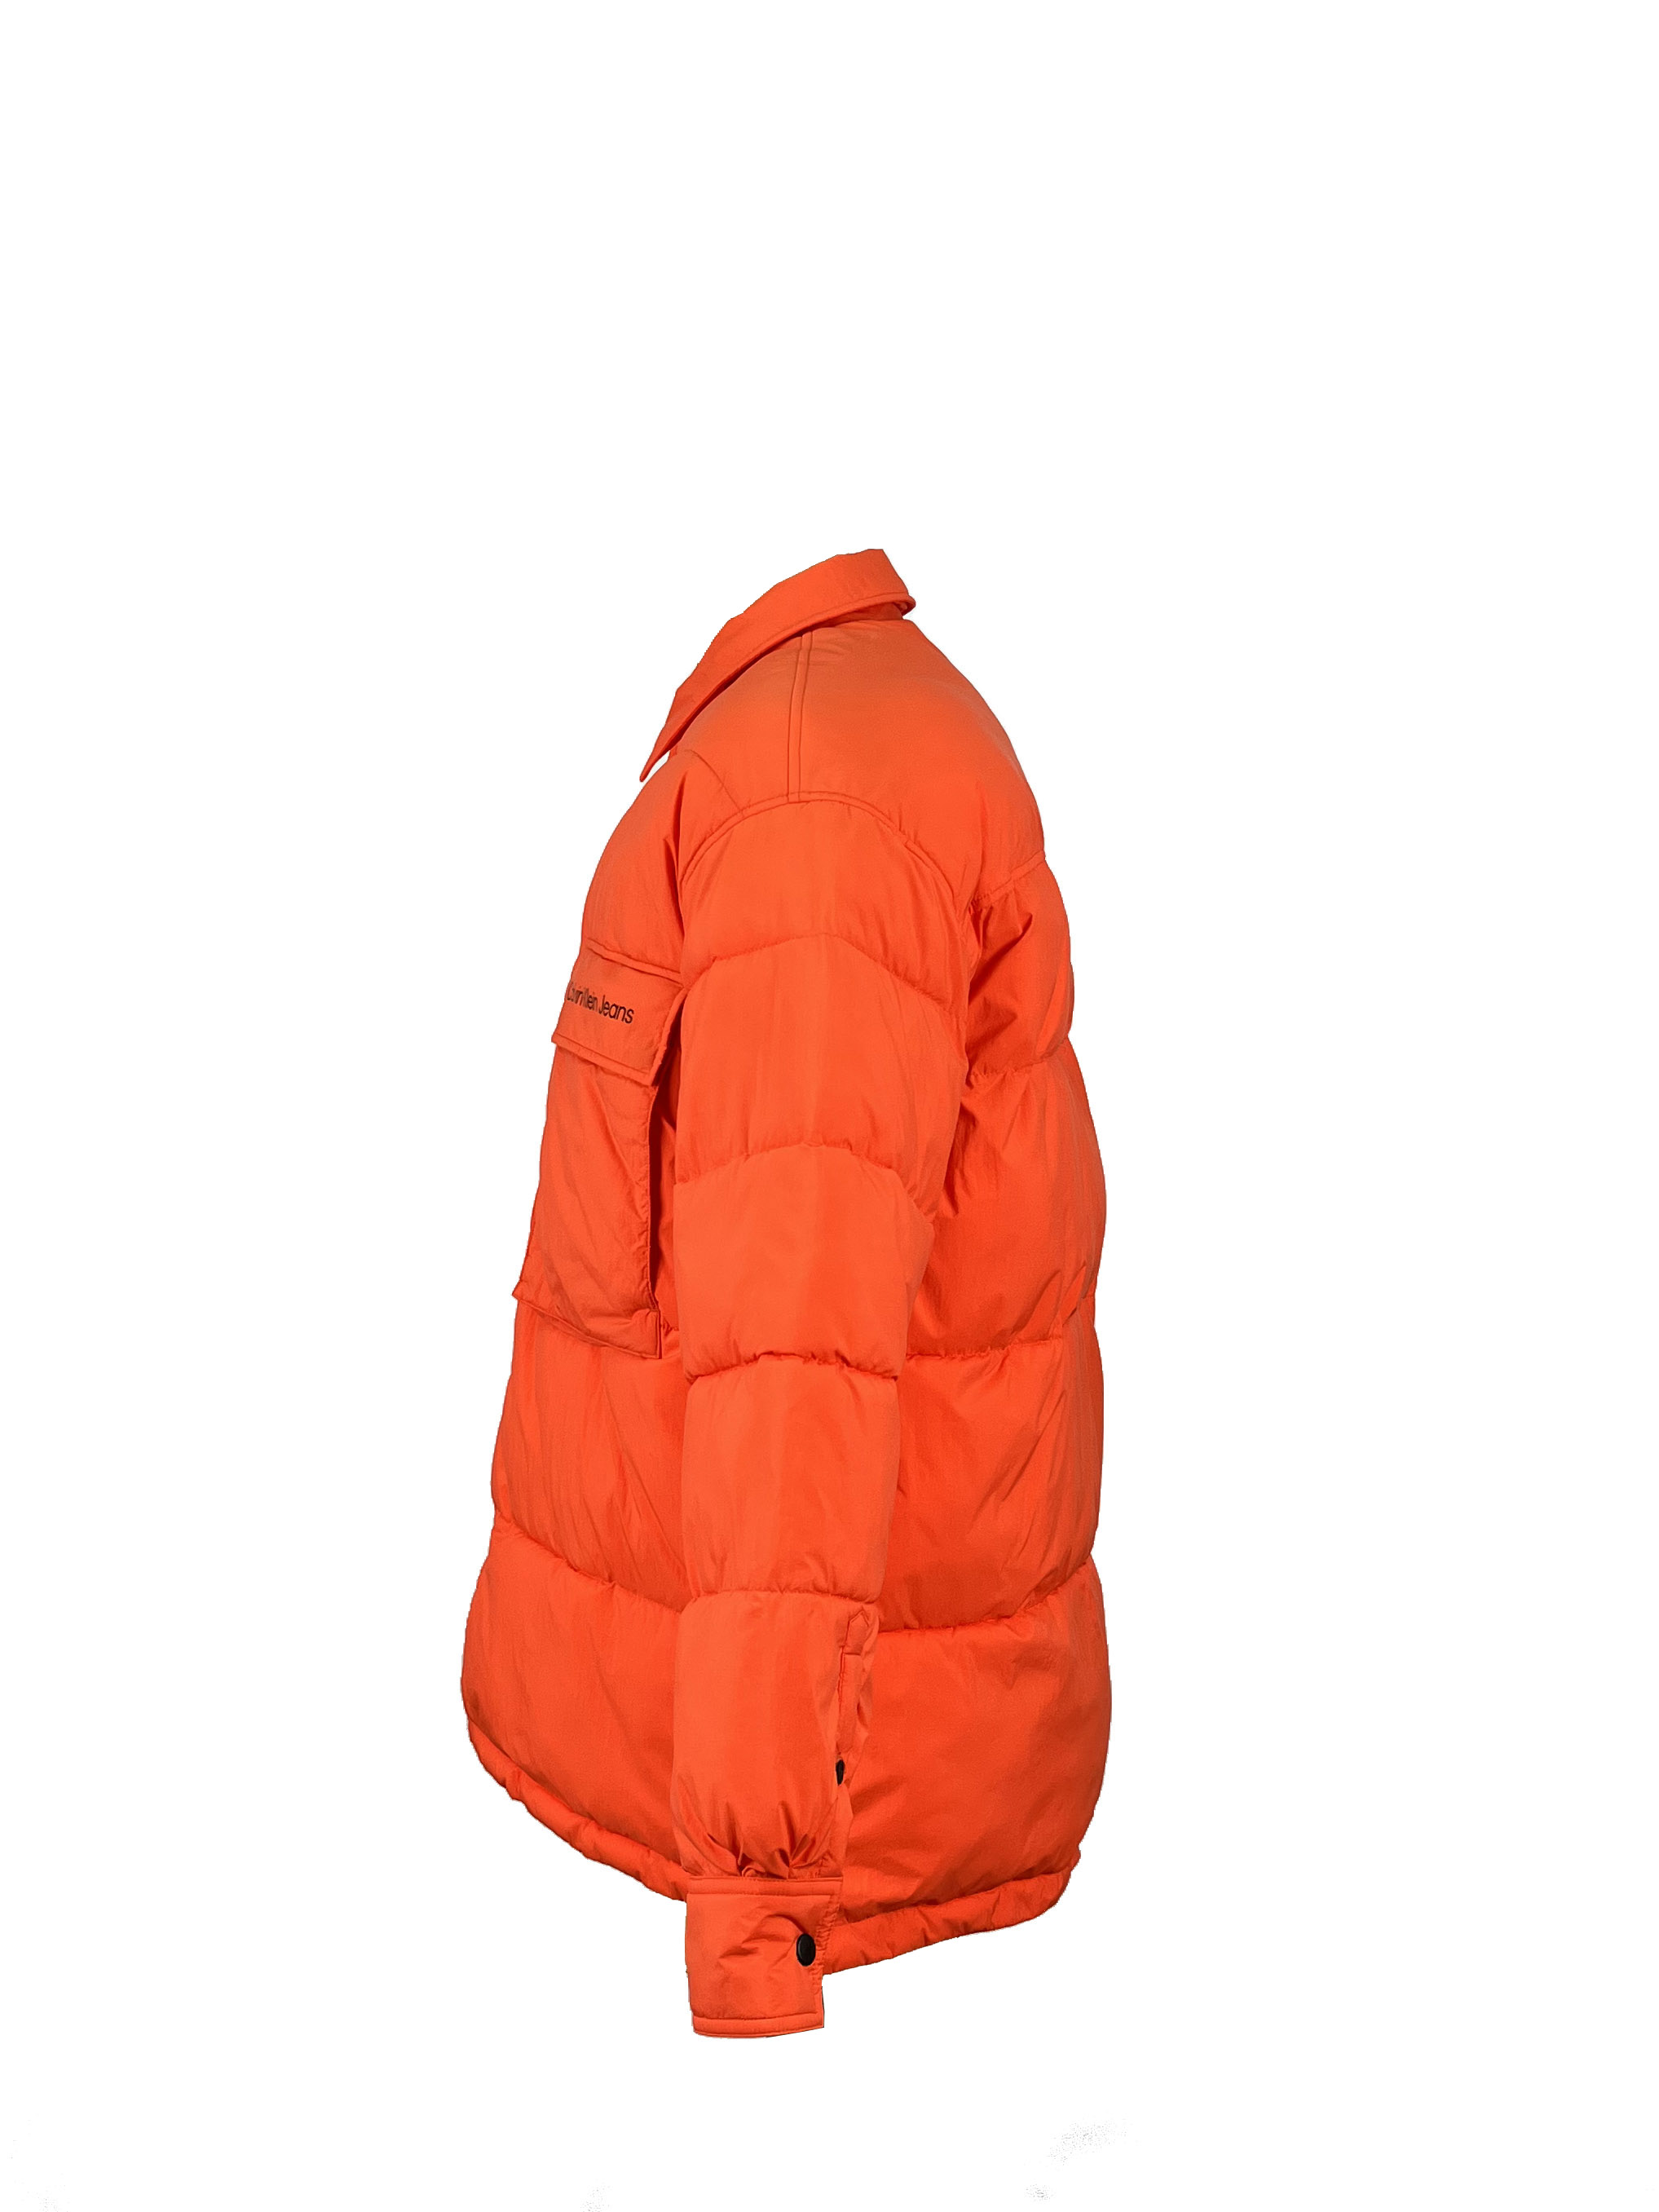 15.padded jacket (2)